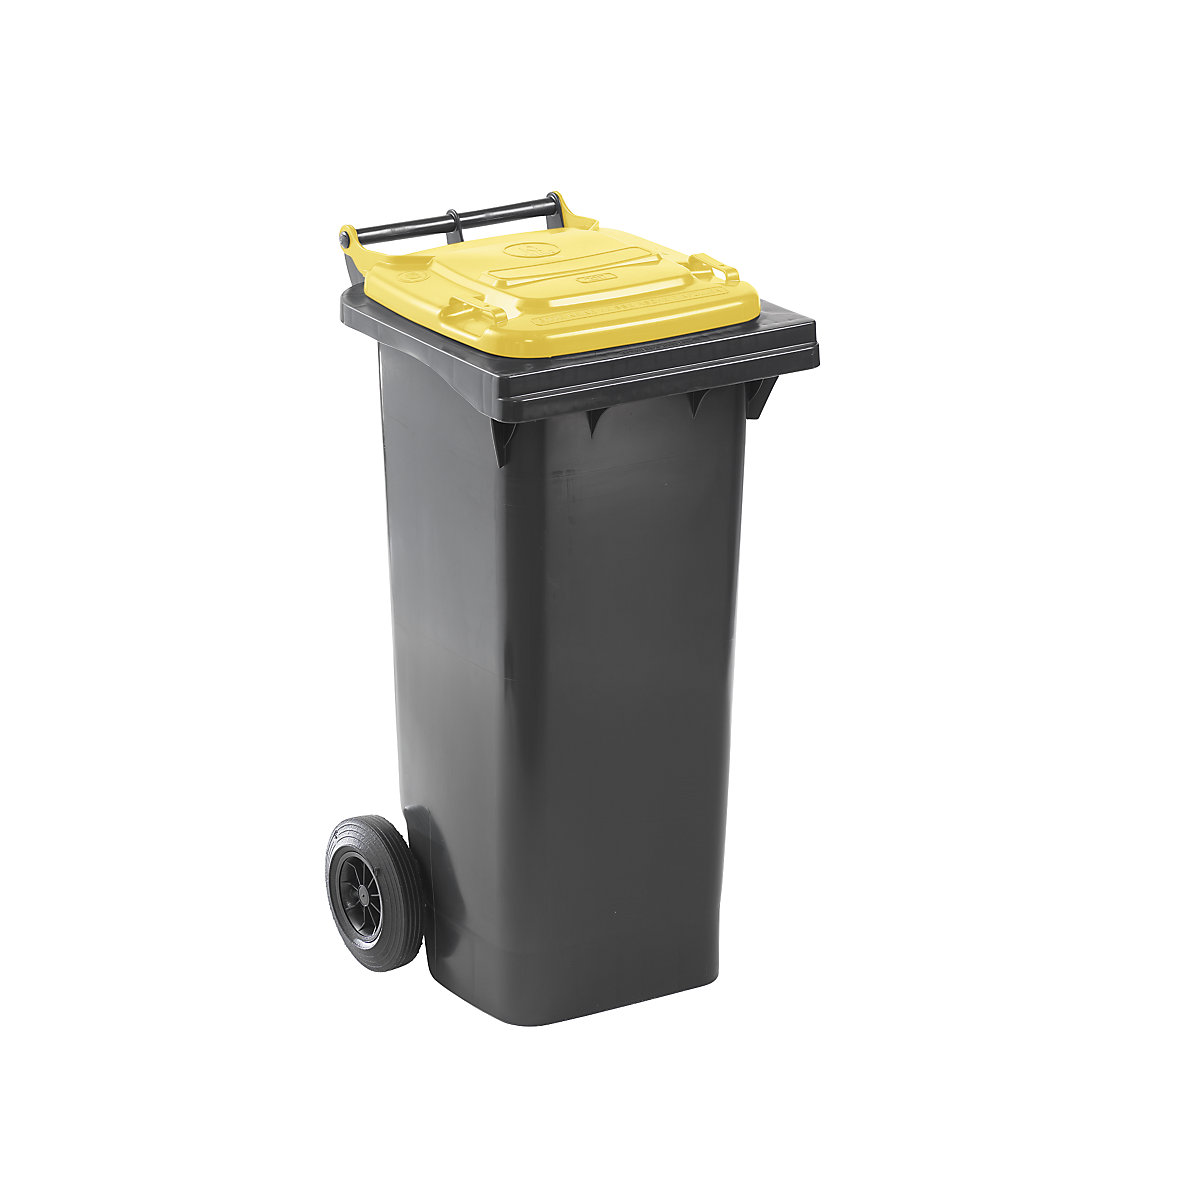 Nádoba na odpad podle ČSN EN 840, objem 80 l, š x v x h 448 x 975 x 530 mm, antracitová, víko žluté